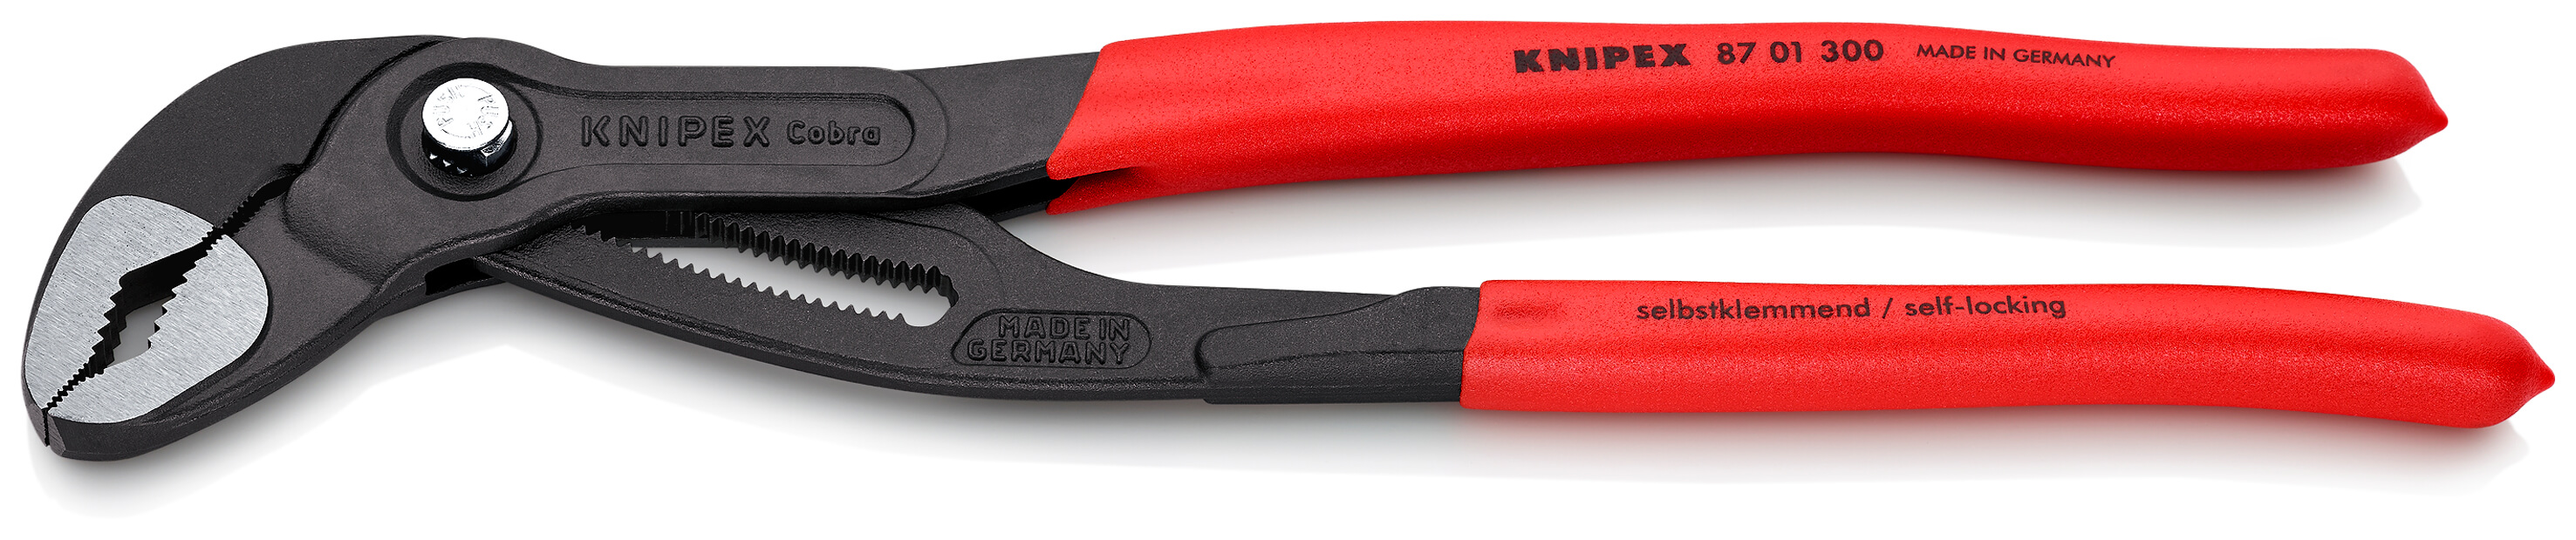 KNIPEX 87 01 300 Cobra® Hightech-Wasserpumpenzange 300 mm grau atramentiert mit rutschhemmendem Kunststoff überzogen poliert SB-Karte/Blister